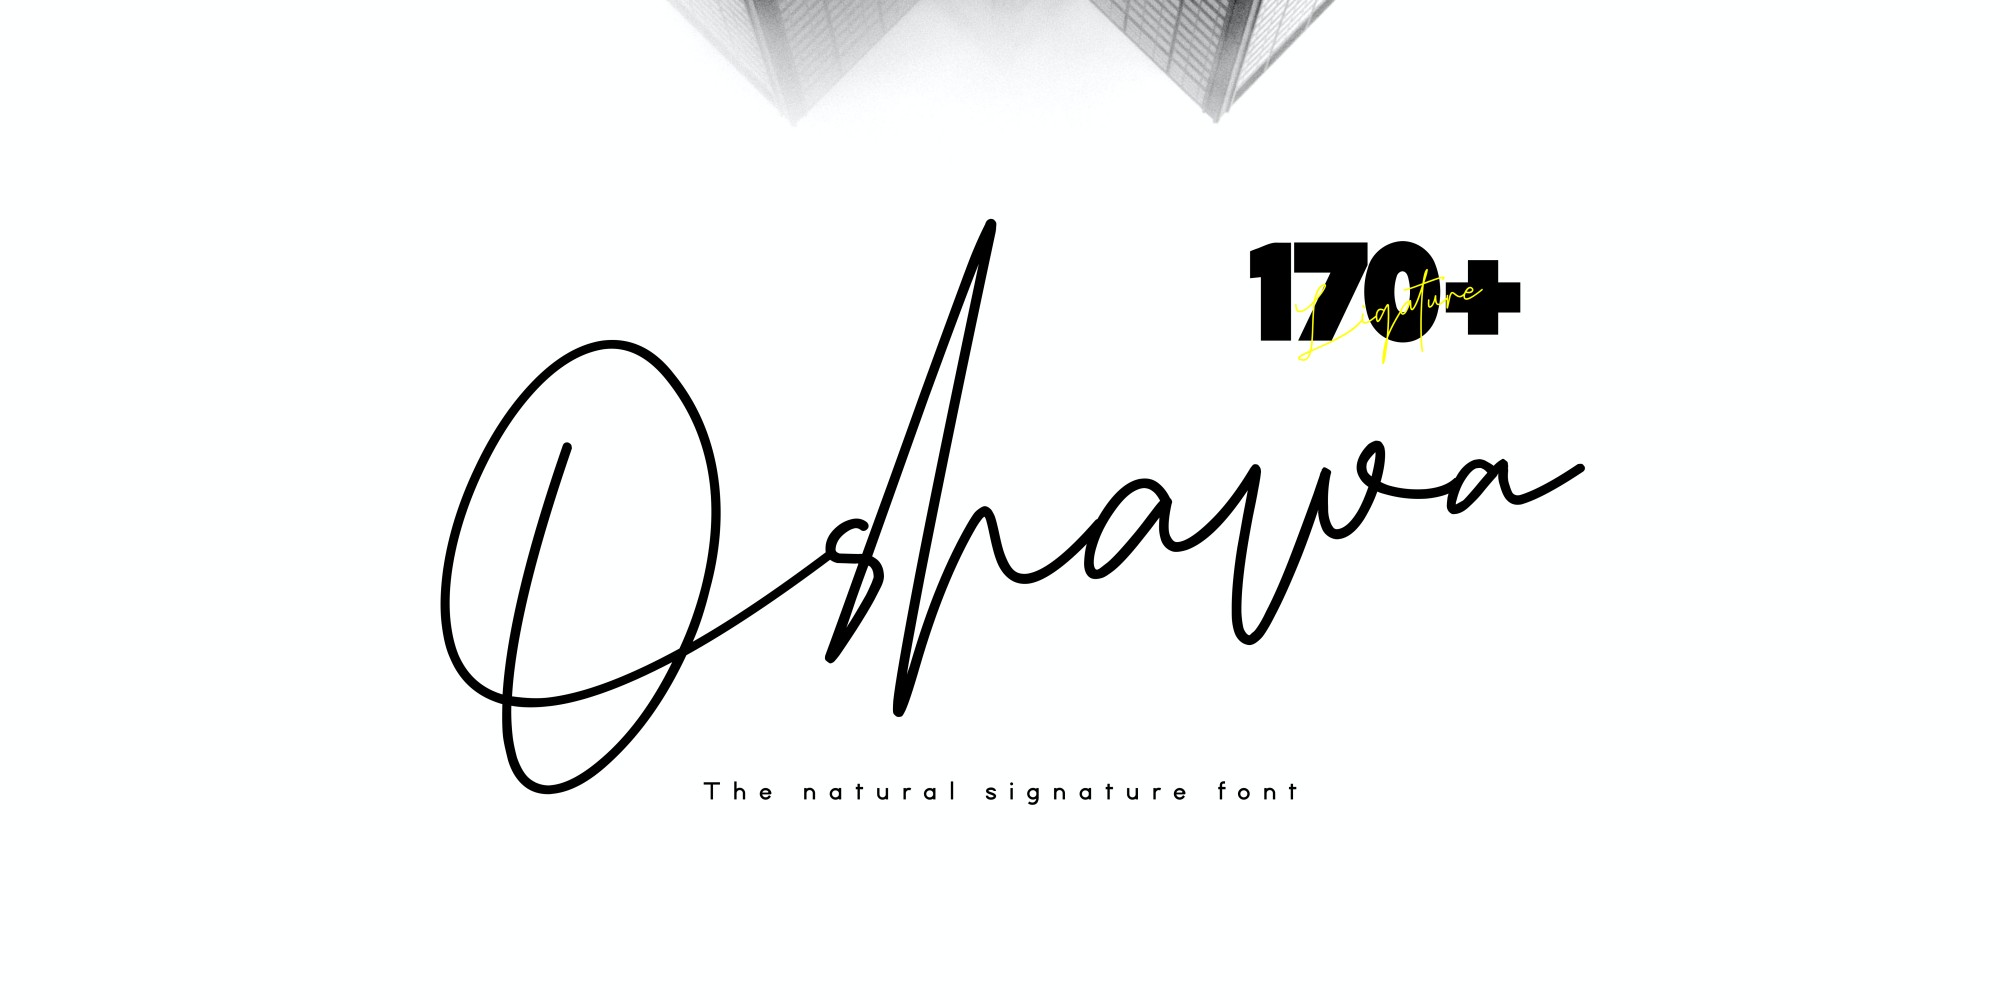 Oshawa – Professional Signature Font